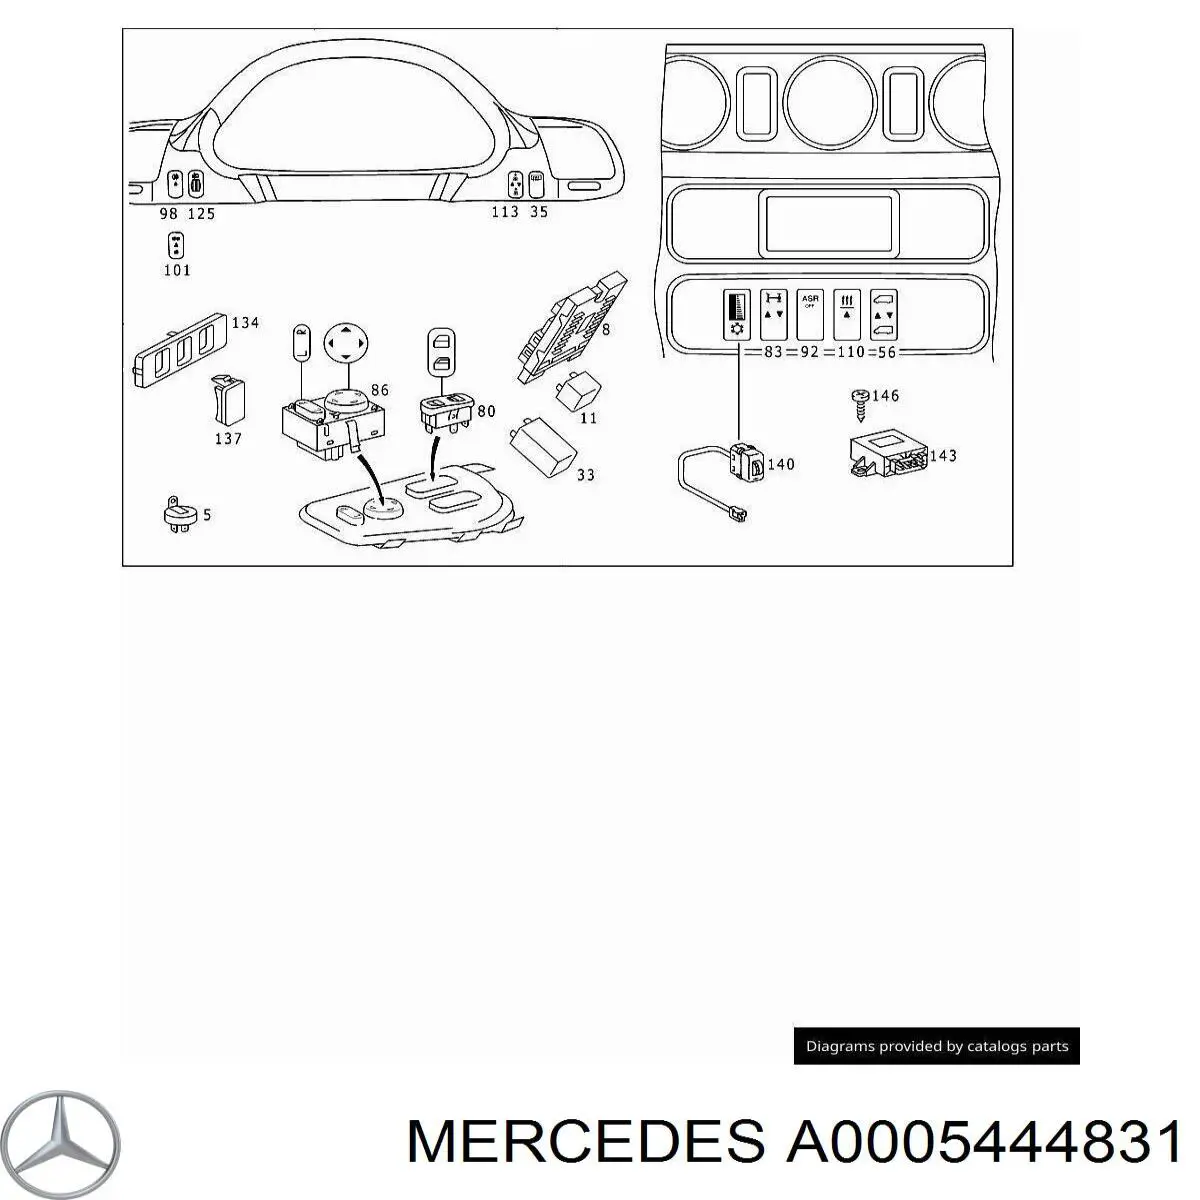 A0005444831 Mercedes botón de elemento de regulación, regulación del alcance de faros